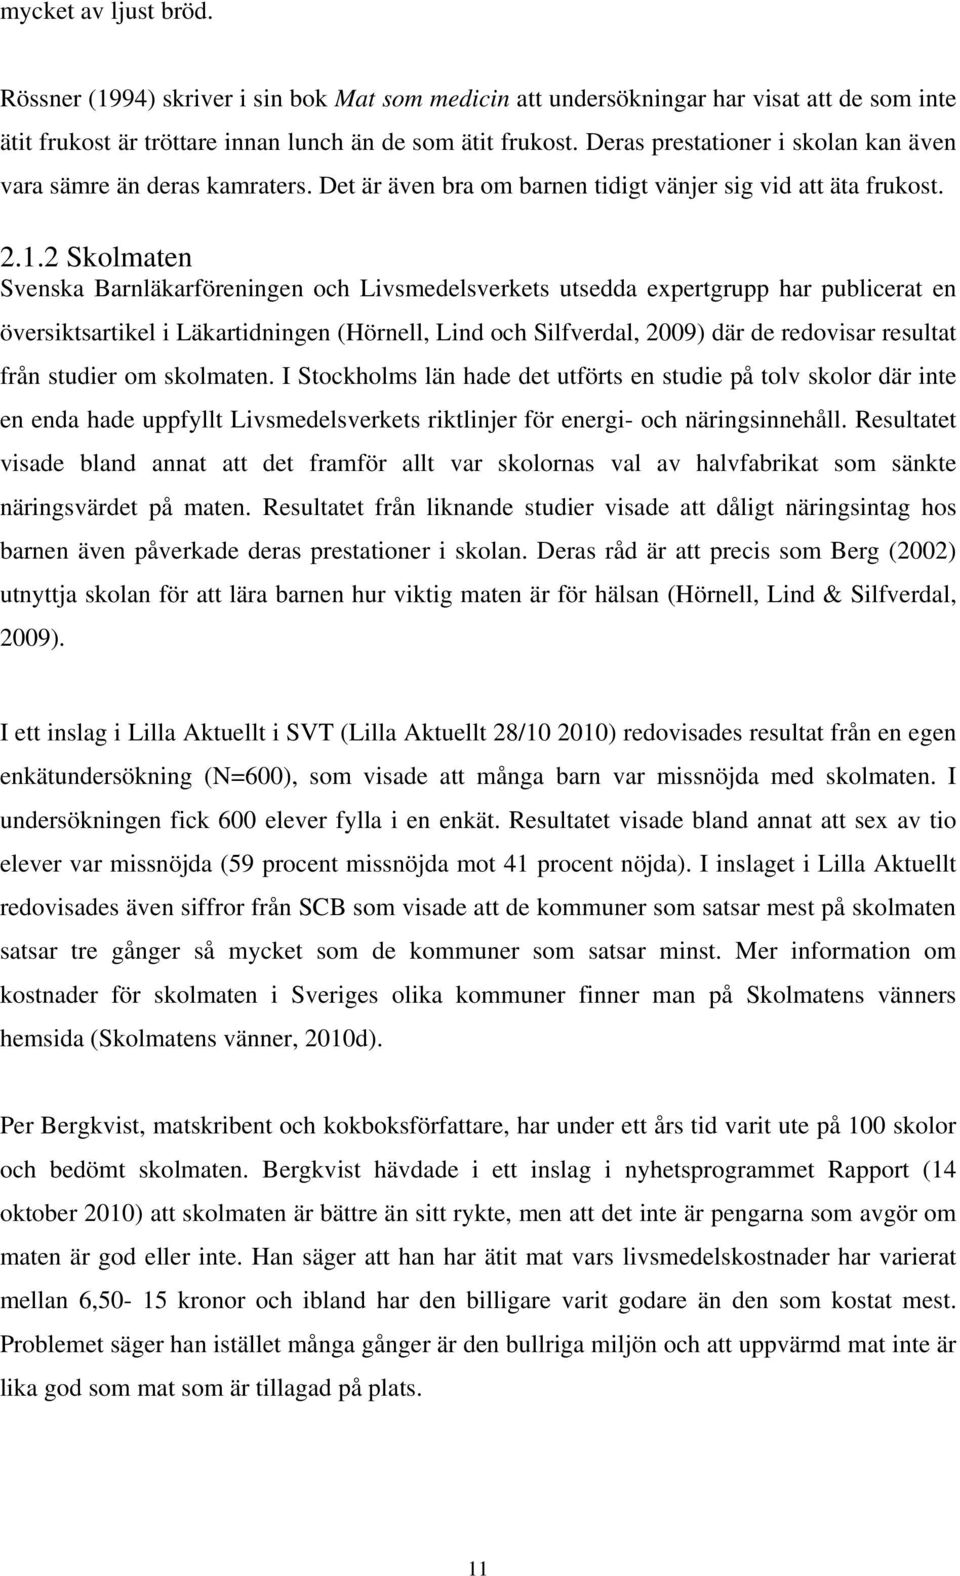 2 Skolmaten Svenska Barnläkarföreningen och Livsmedelsverkets utsedda expertgrupp har publicerat en översiktsartikel i Läkartidningen (Hörnell, Lind och Silfverdal, 2009) där de redovisar resultat